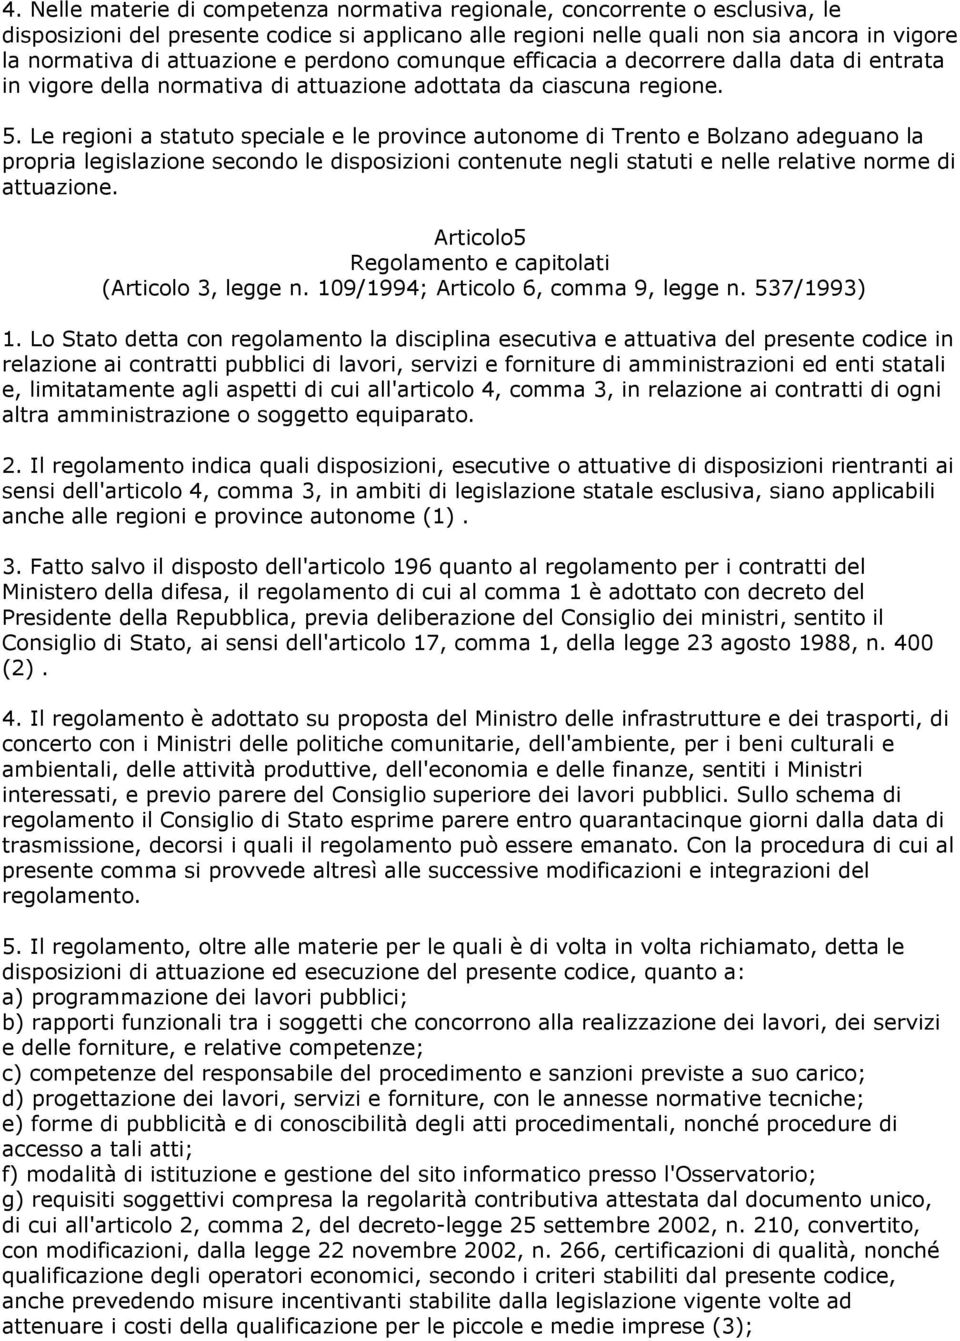 Le regioni a statuto speciale e le province autonome di Trento e Bolzano adeguano la propria legislazione secondo le disposizioni contenute negli statuti e nelle relative norme di attuazione.